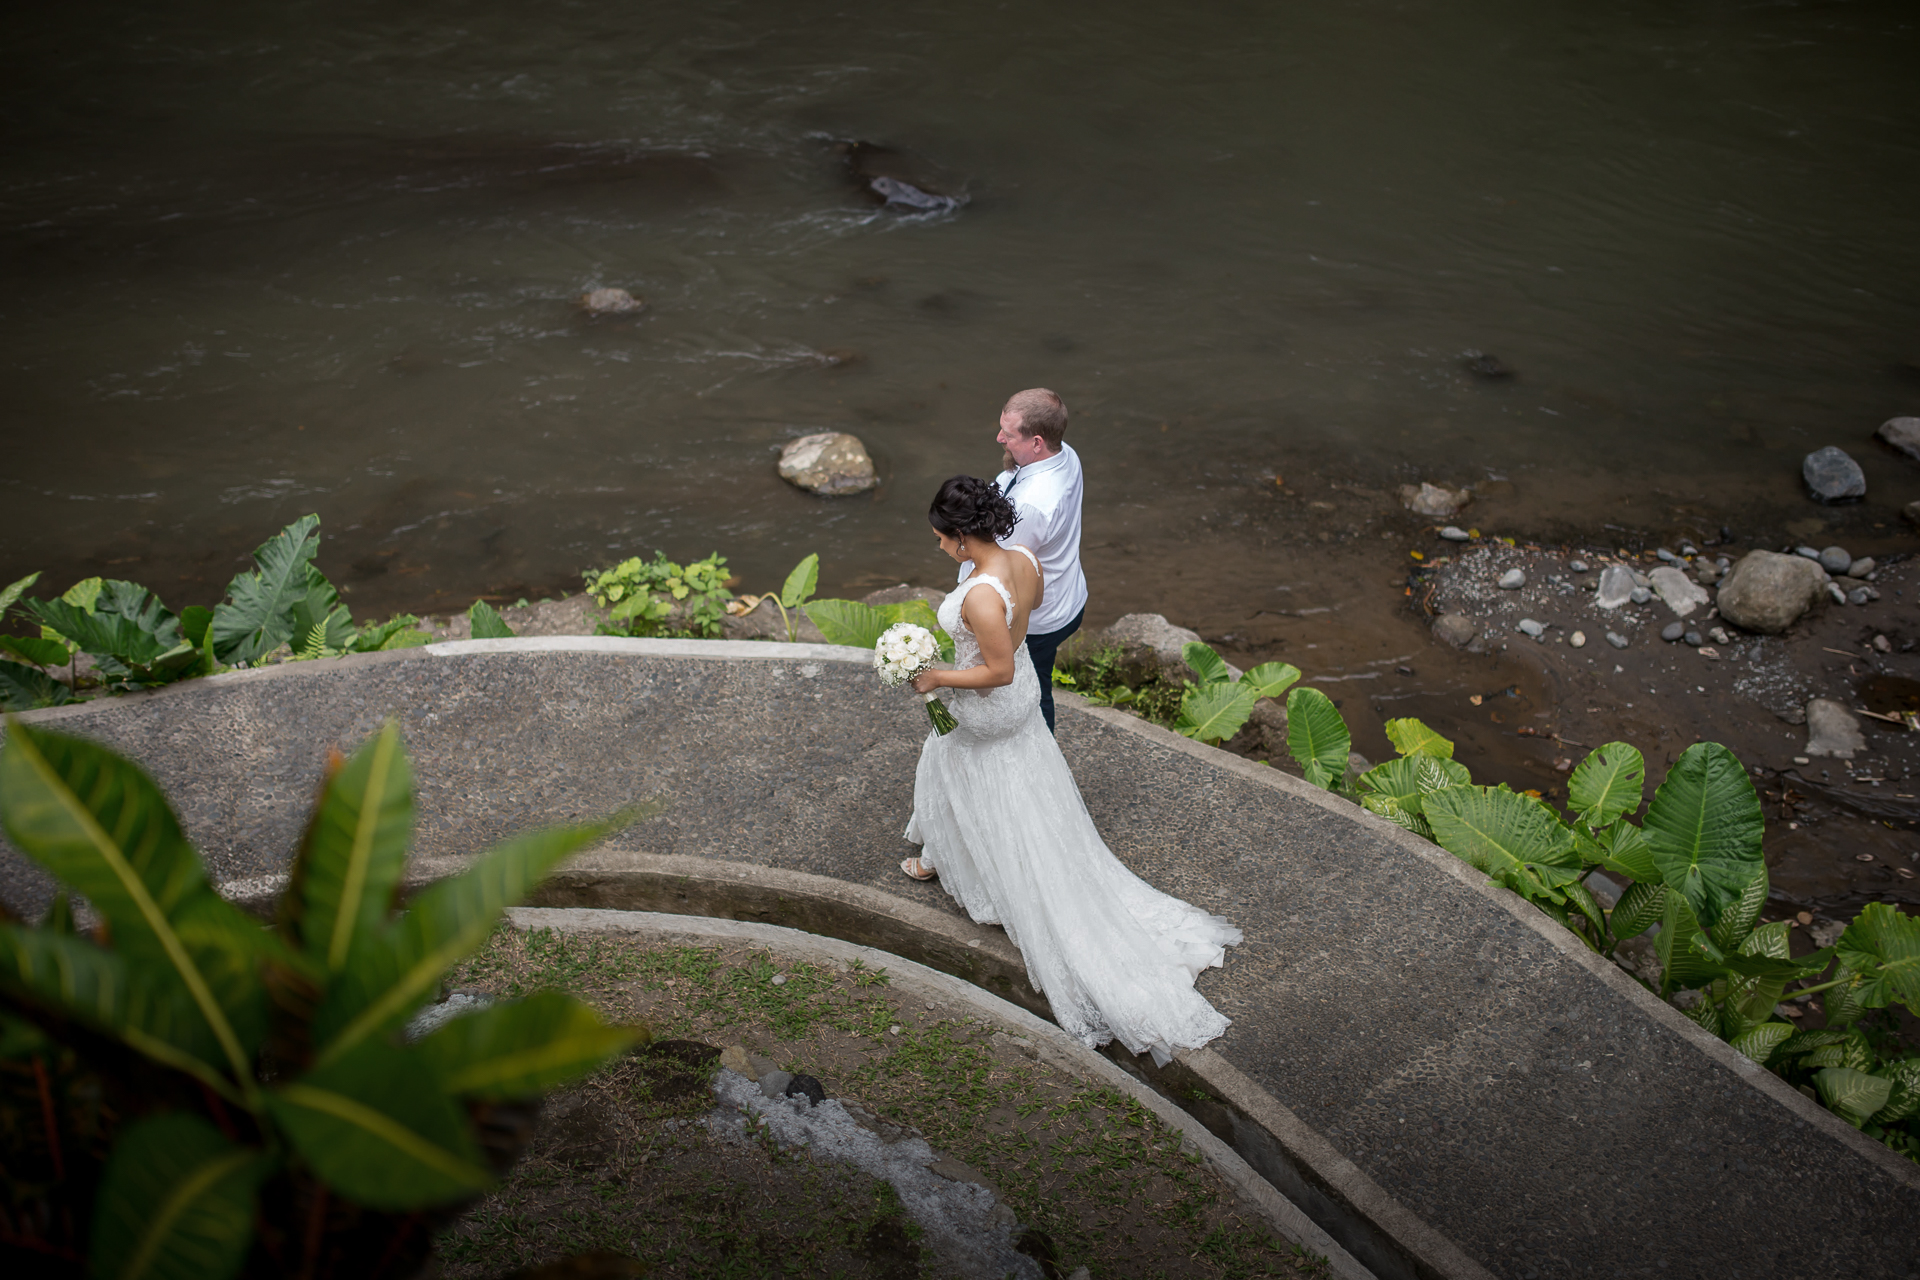  Royal Pitamaha Wedding - river walk before walk down the aisle